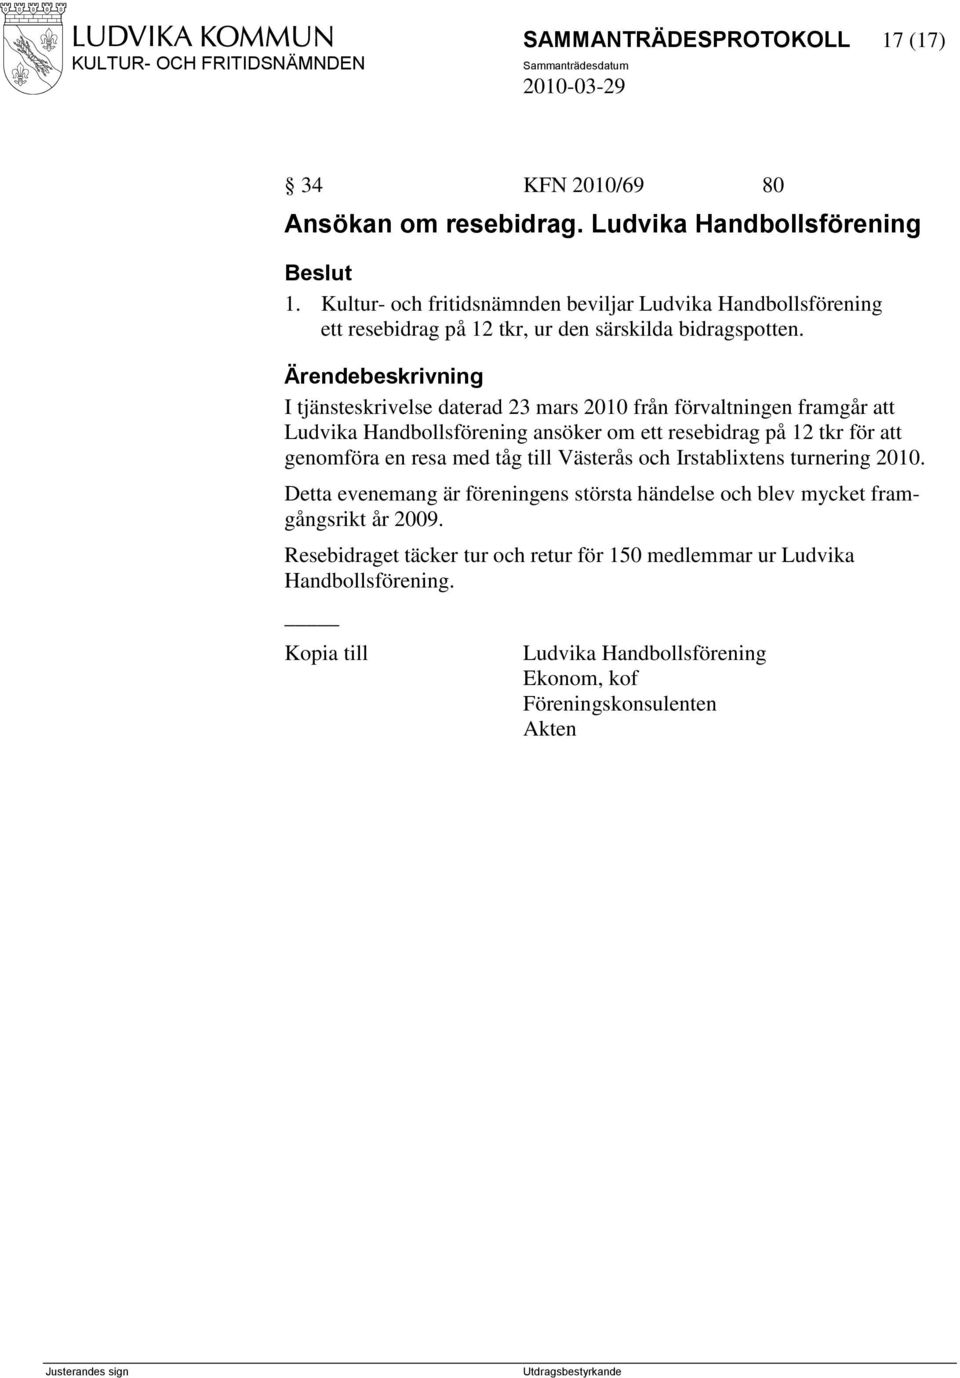 I tjänsteskrivelse daterad 23 mars 2010 från förvaltningen framgår att Ludvika Handbollsförening ansöker om ett resebidrag på 12 tkr för att genomföra en resa med